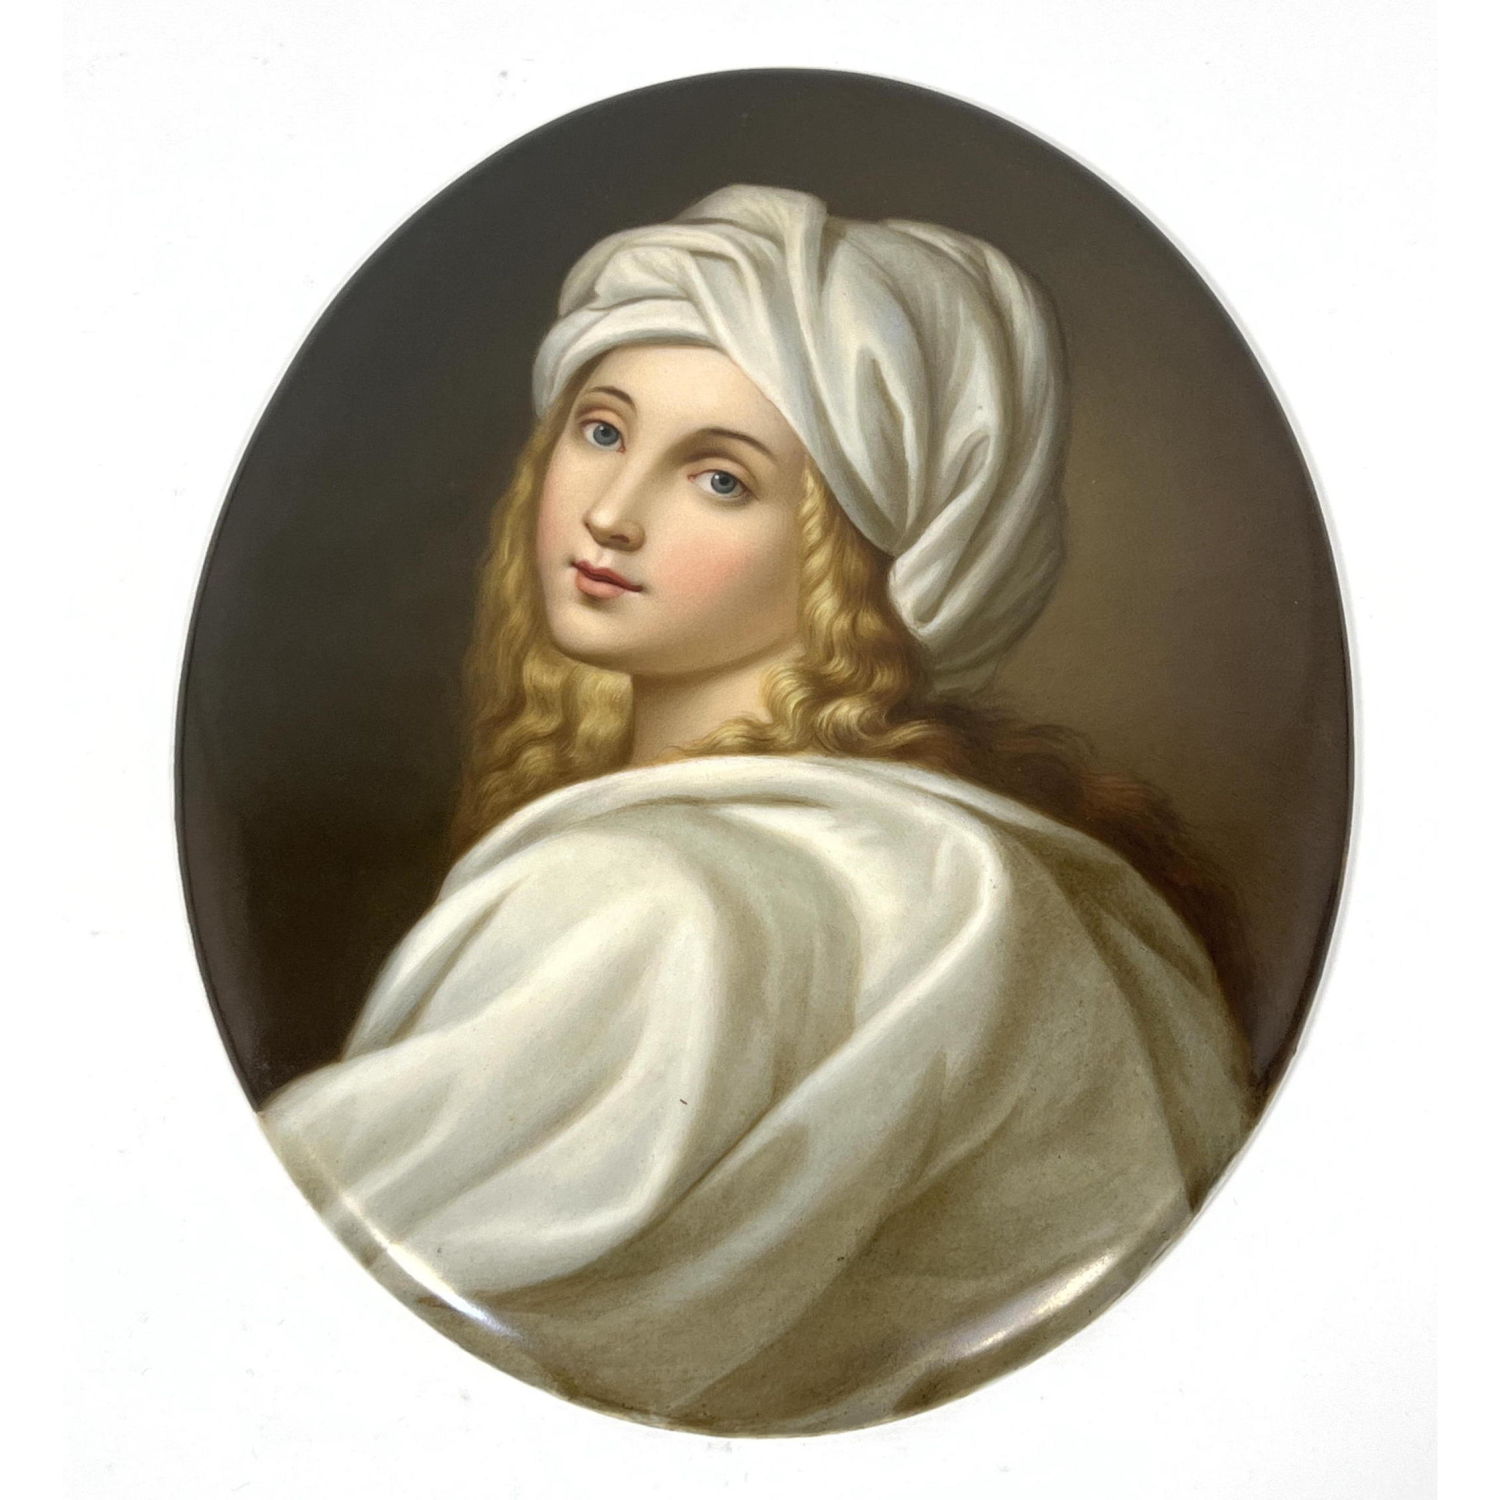 KPM Plaque portrait of blond woman 2ff558